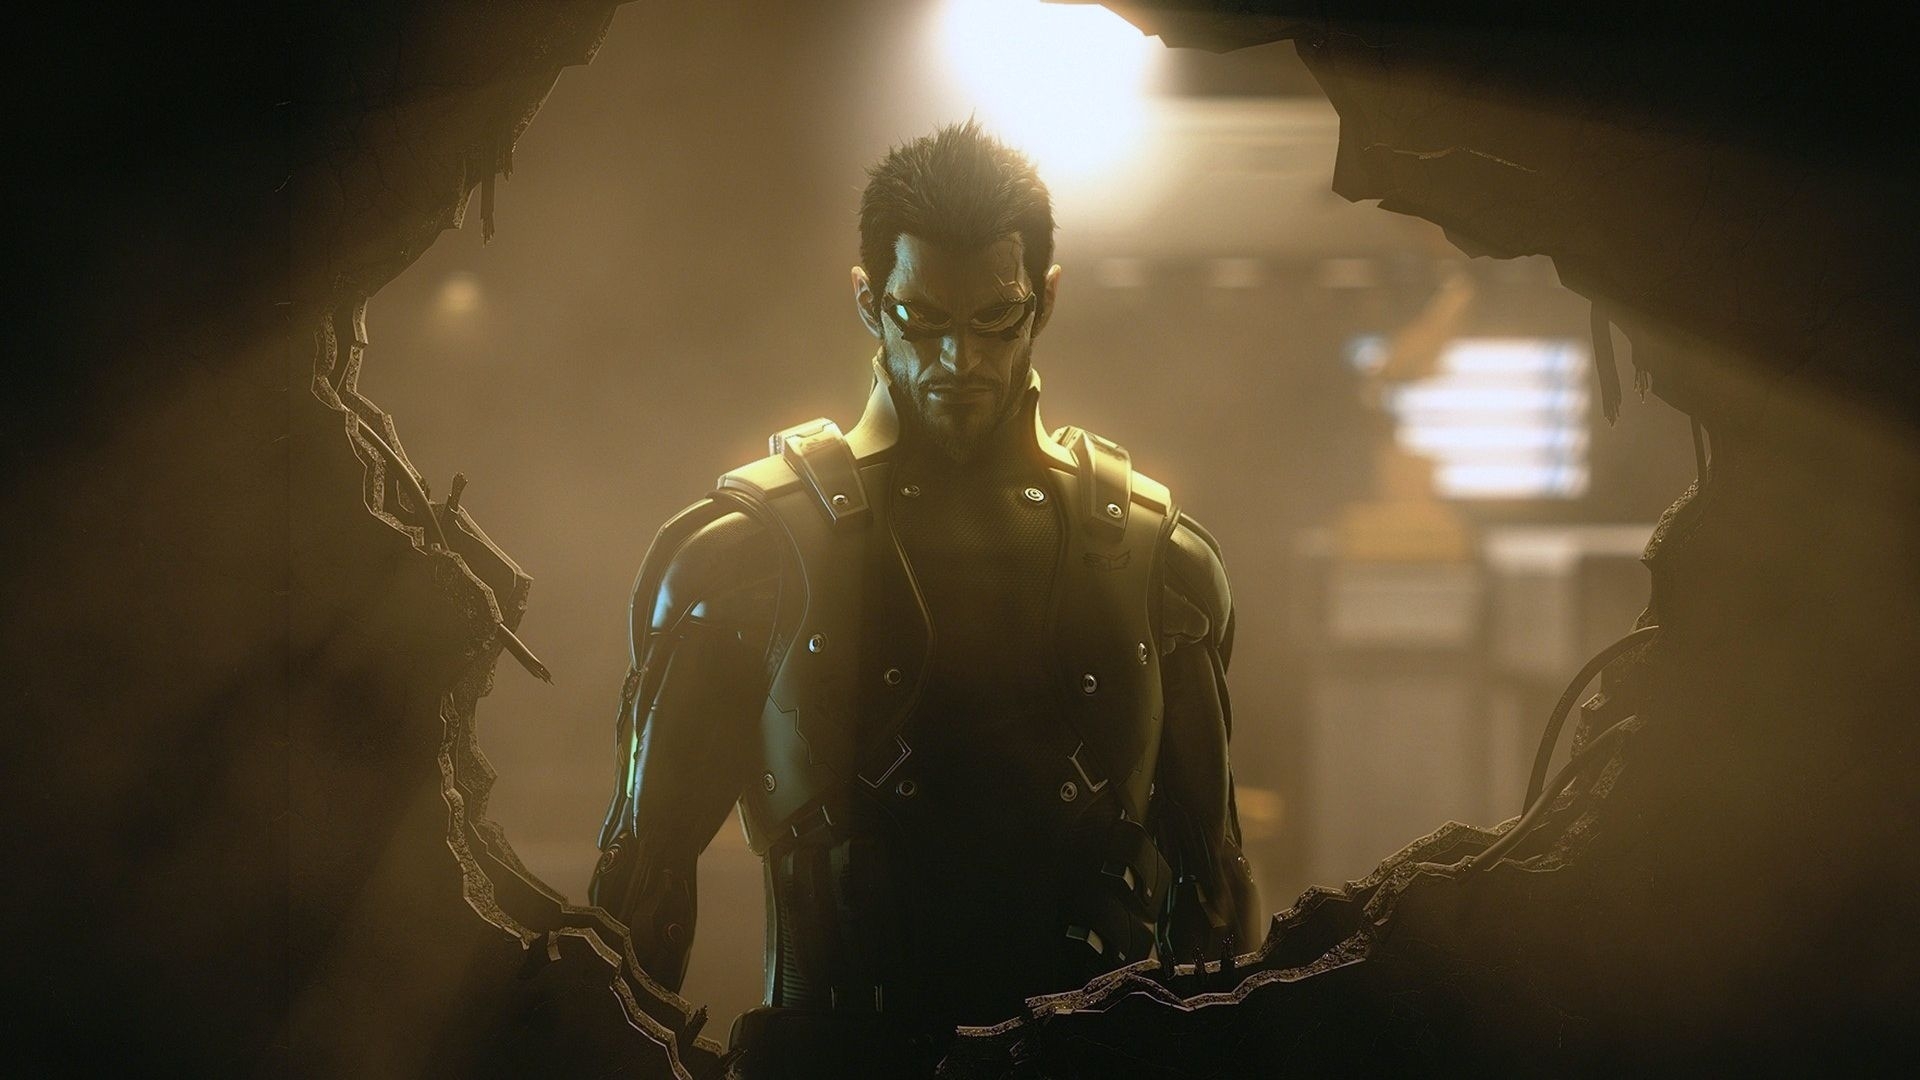 Скачать обои Deus Ex: Invisible War на телефон бесплатно